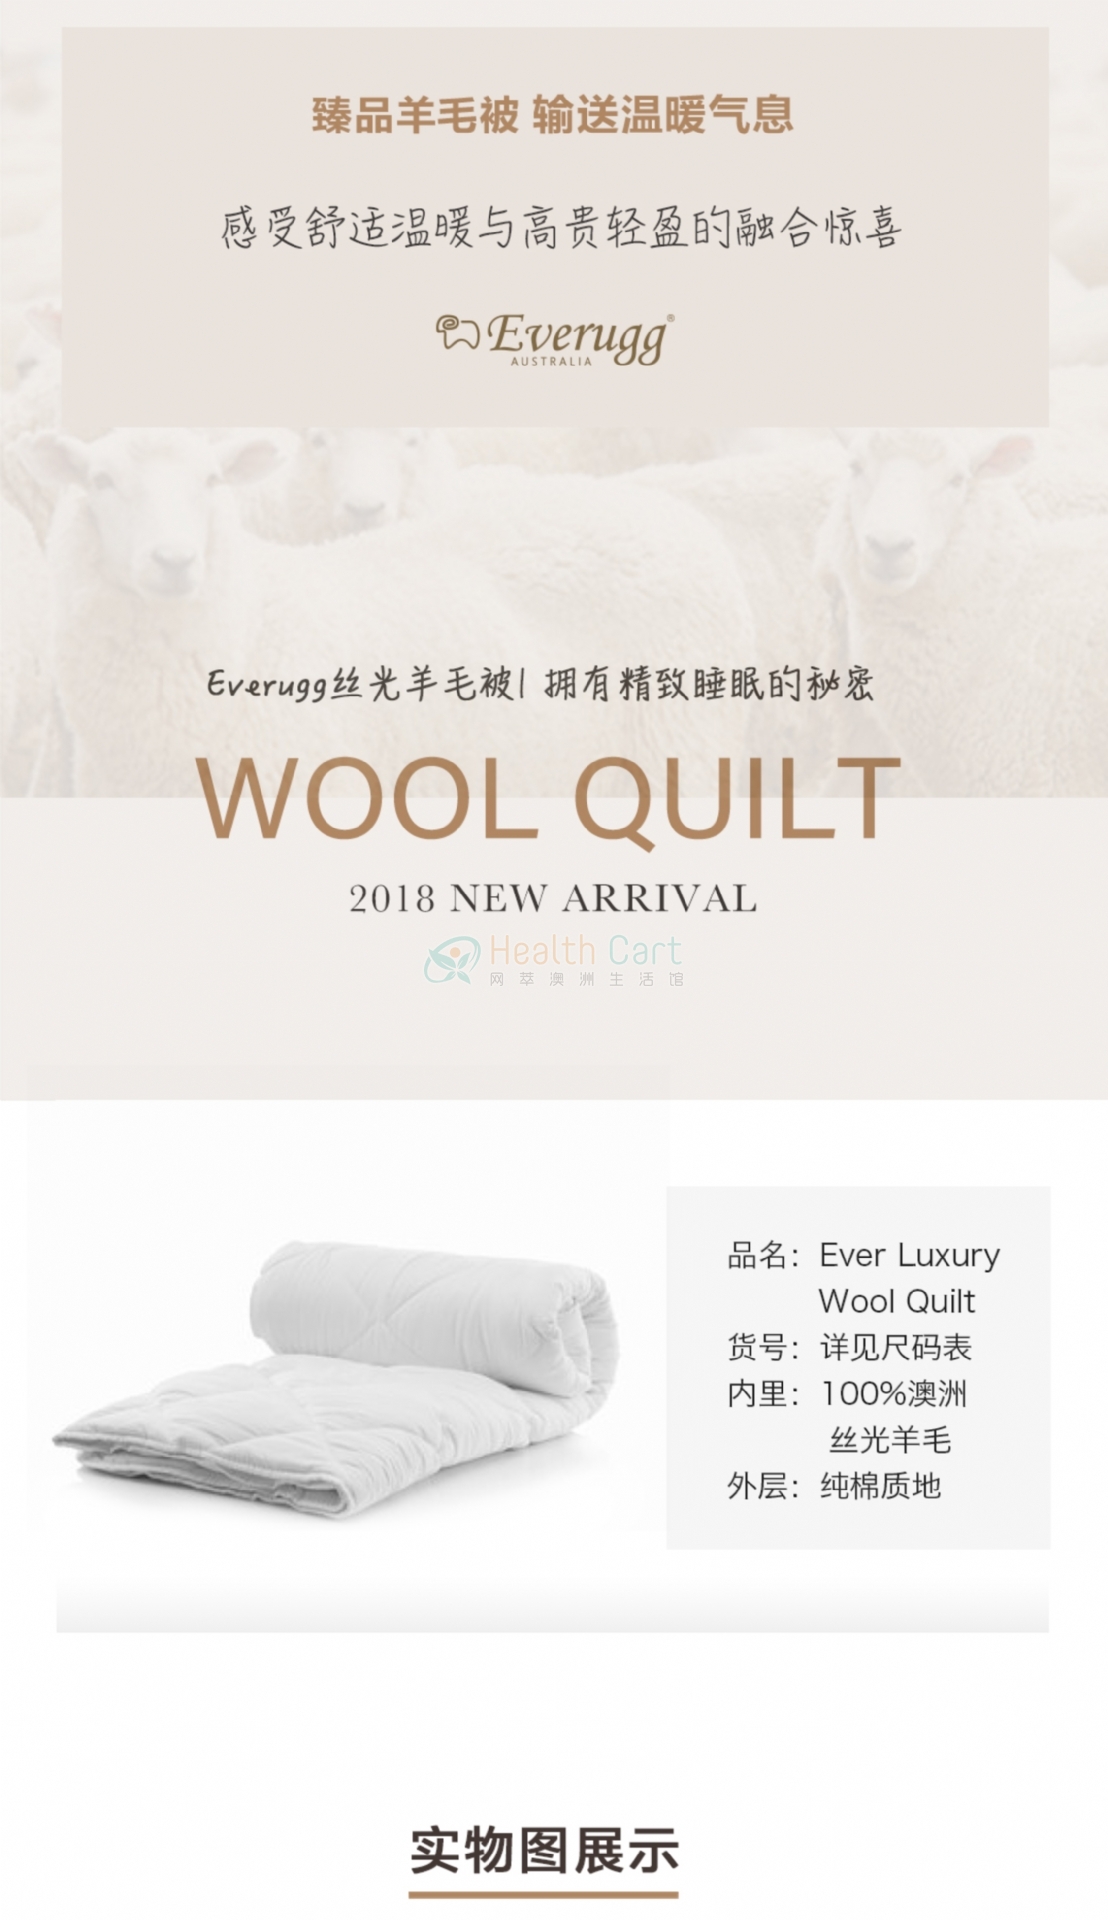 Australian Everugg wool quilt 350GSM210*210 - @australian everugg wool quilt 350gsm210210 - 6 - Health Cart